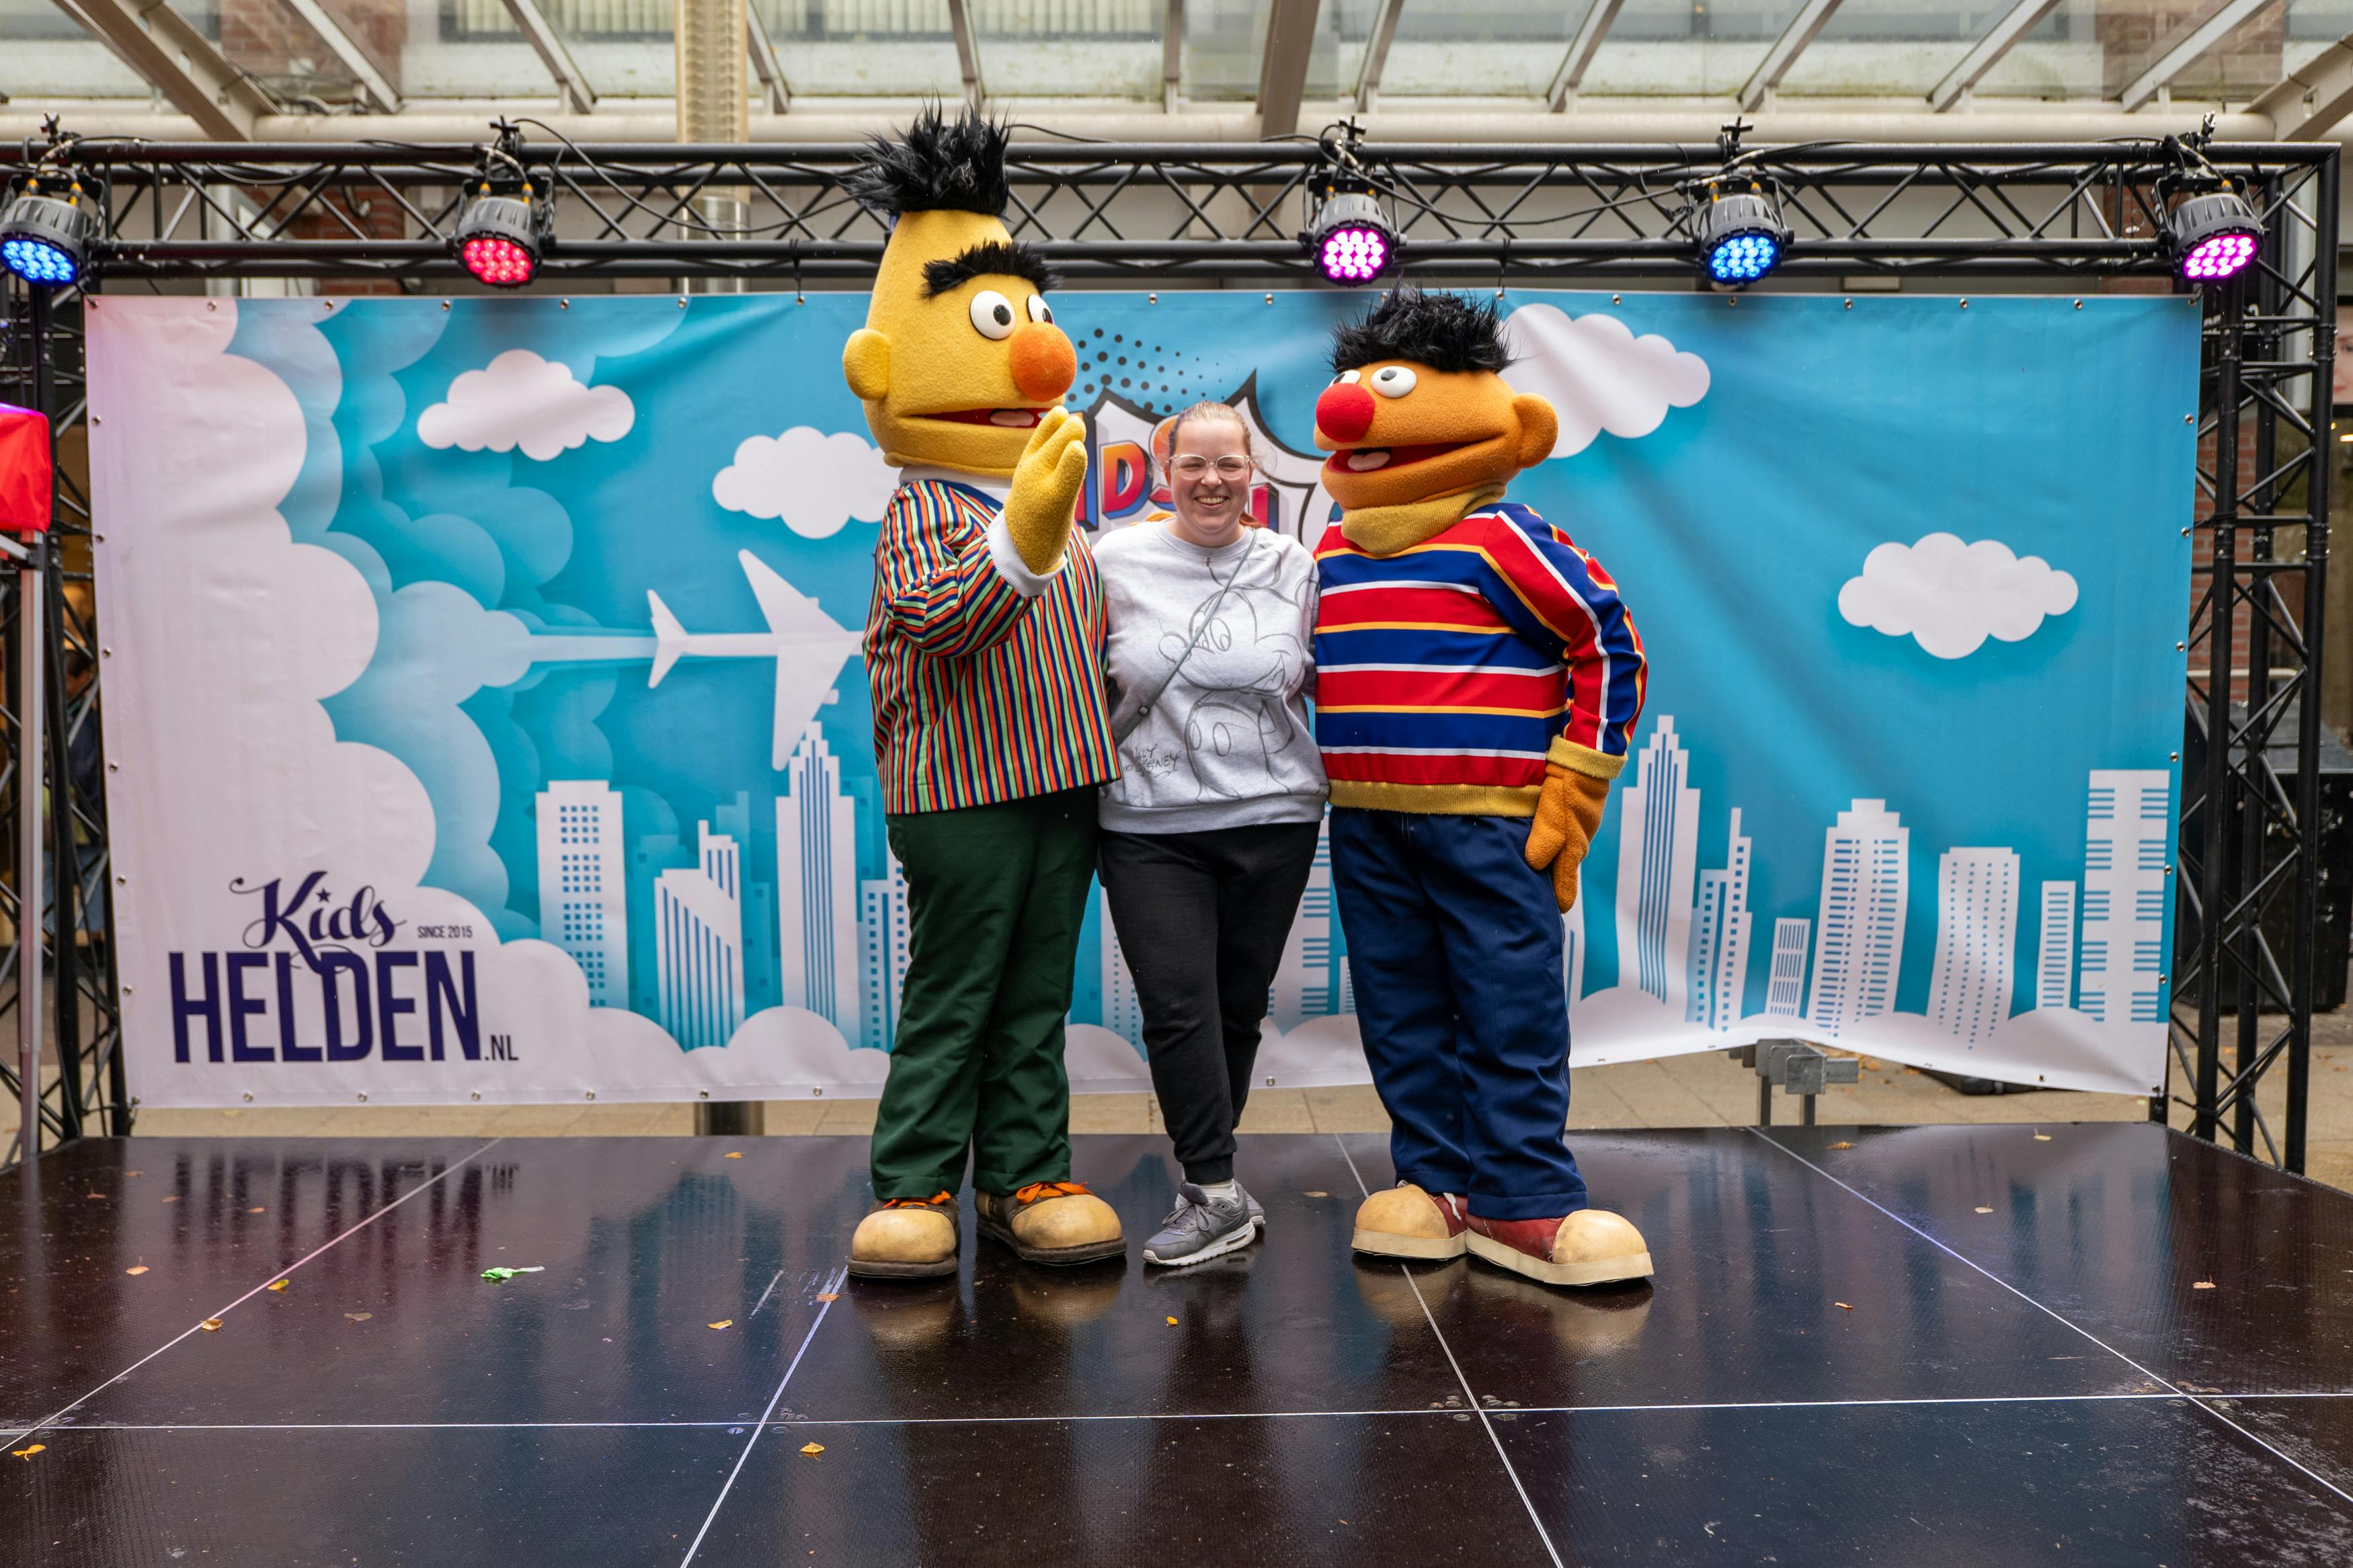 Meet & Greet met Bert en Ernie